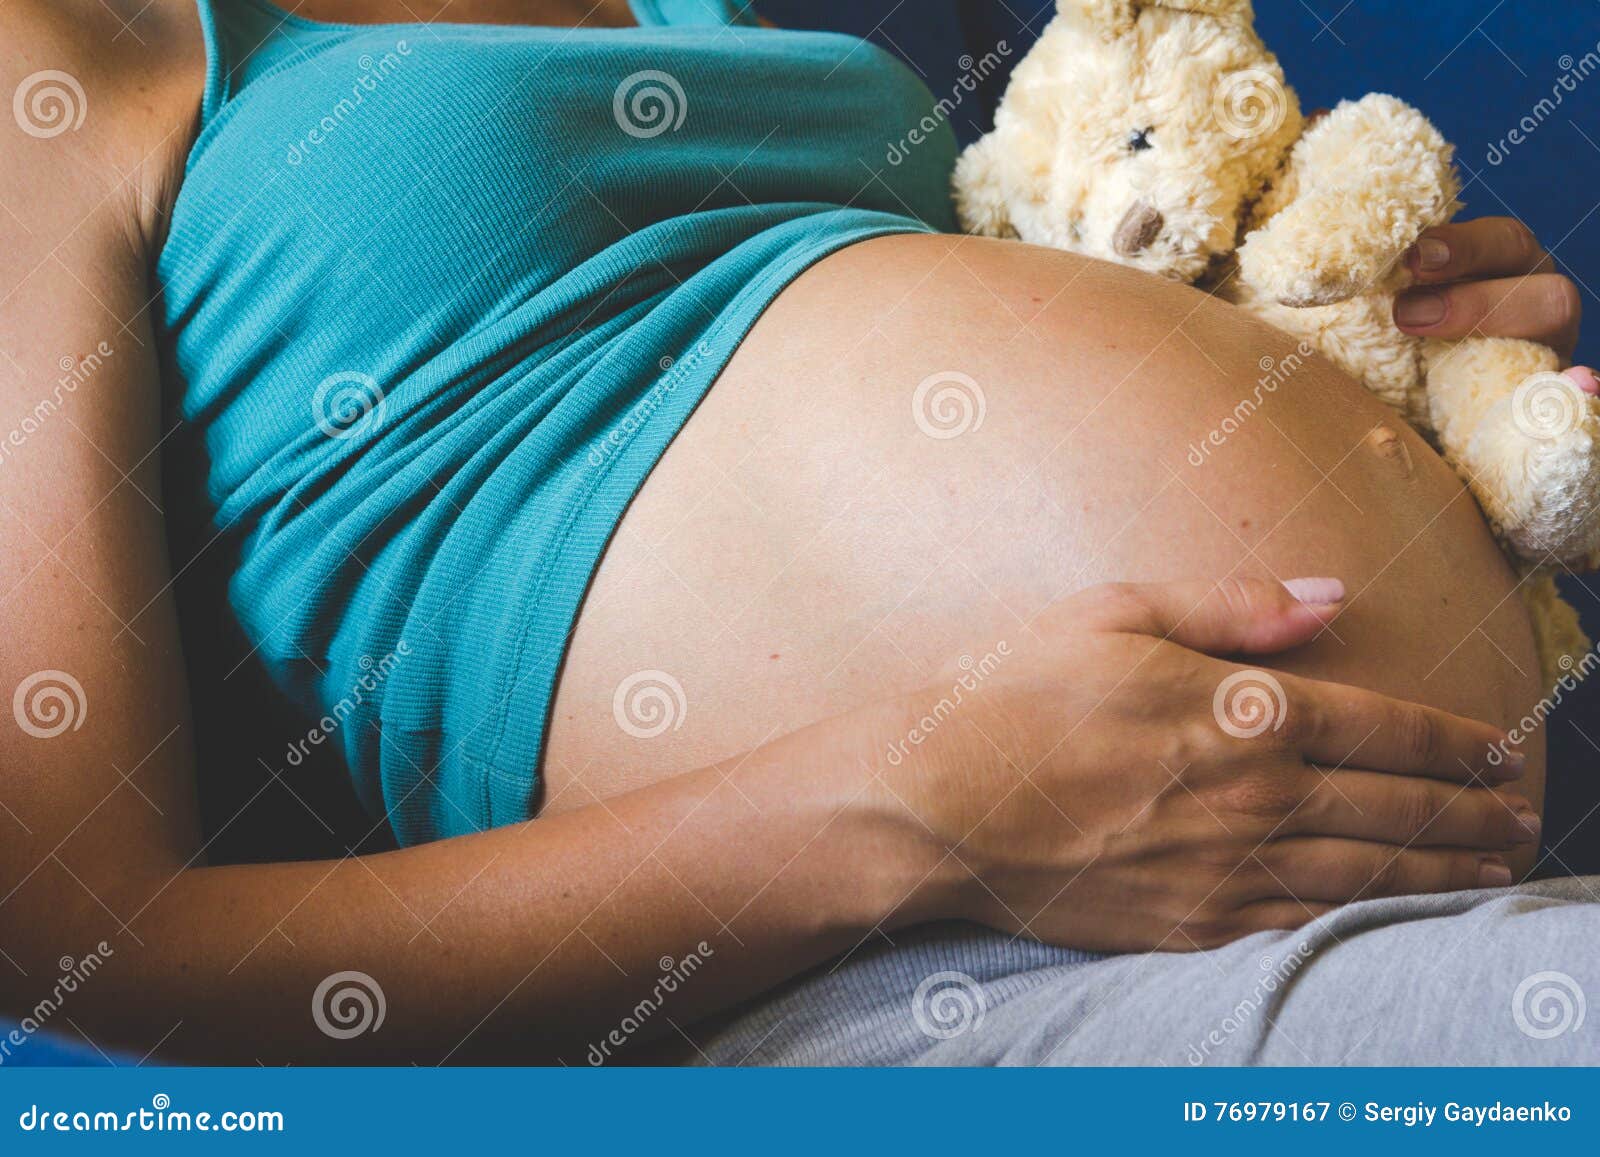 Беременность большая голова. Животик беременной. Красивые большие животы беременных.